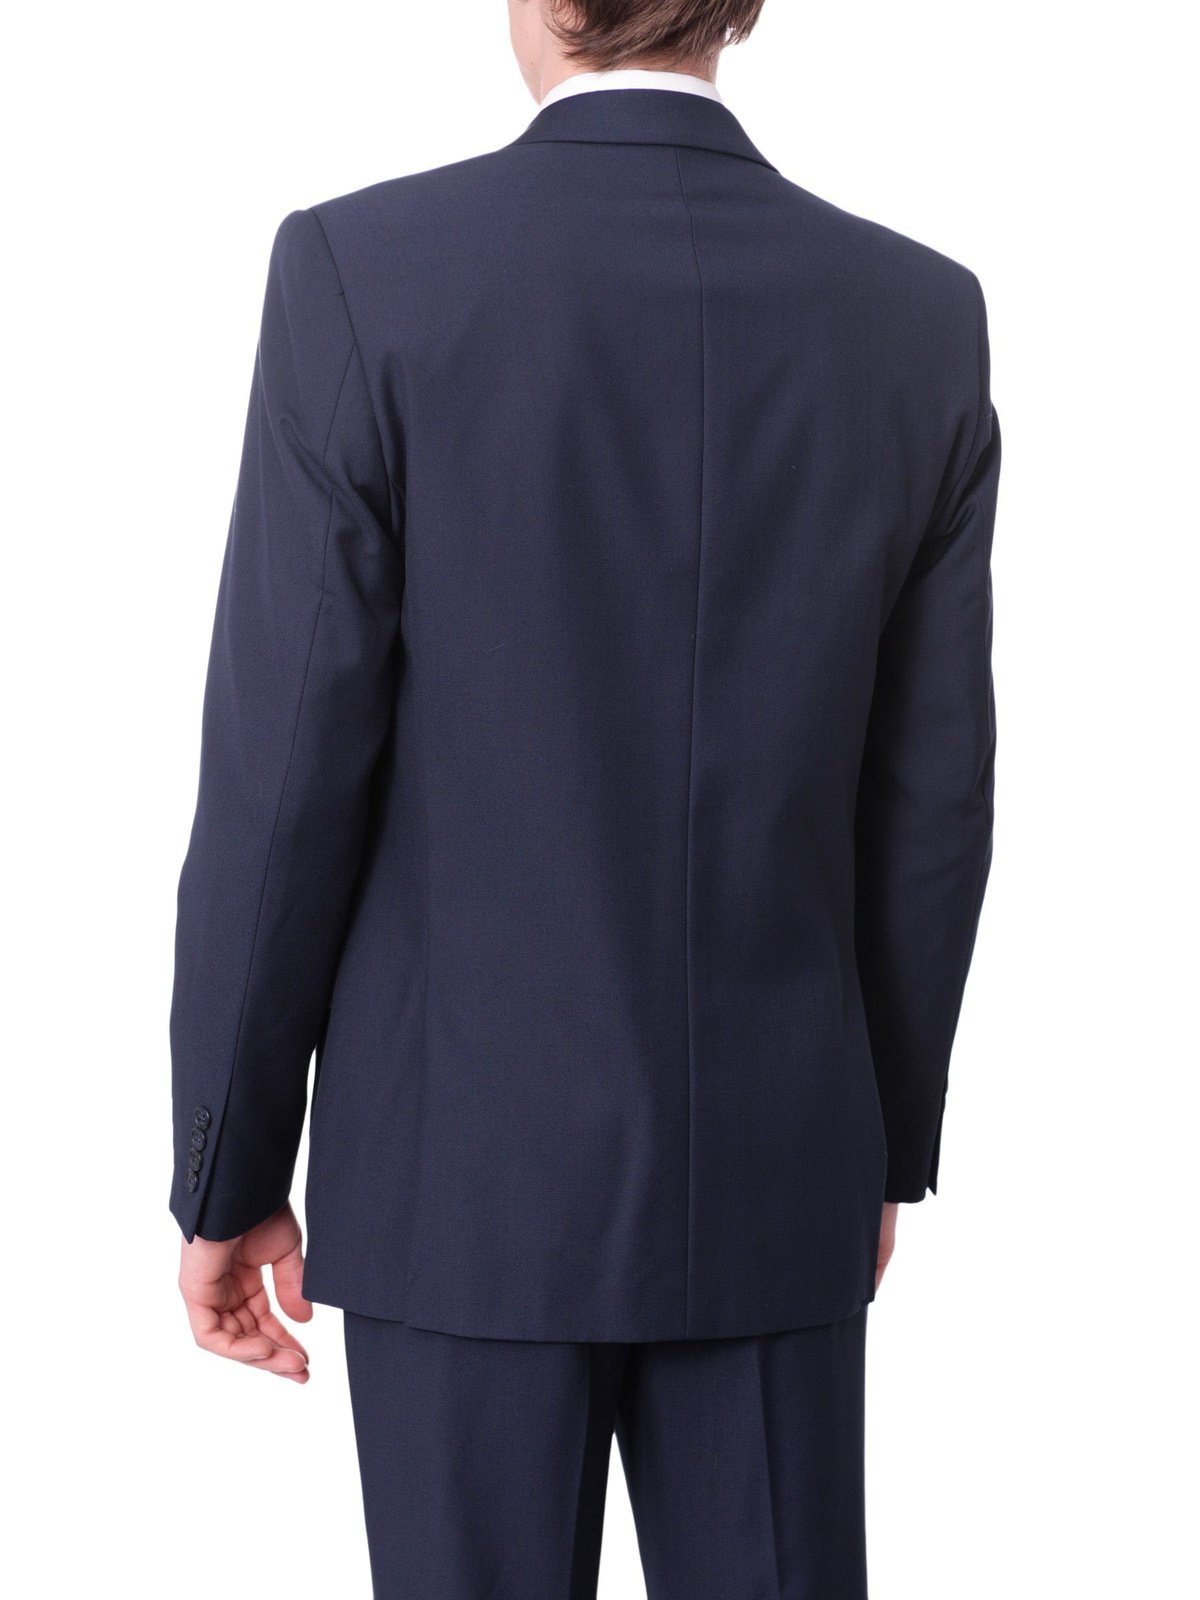 Raphael SUITS Men's Raphael Regular Fit Solid Blue Two Button 2 Piece Suit Jacket & Pants